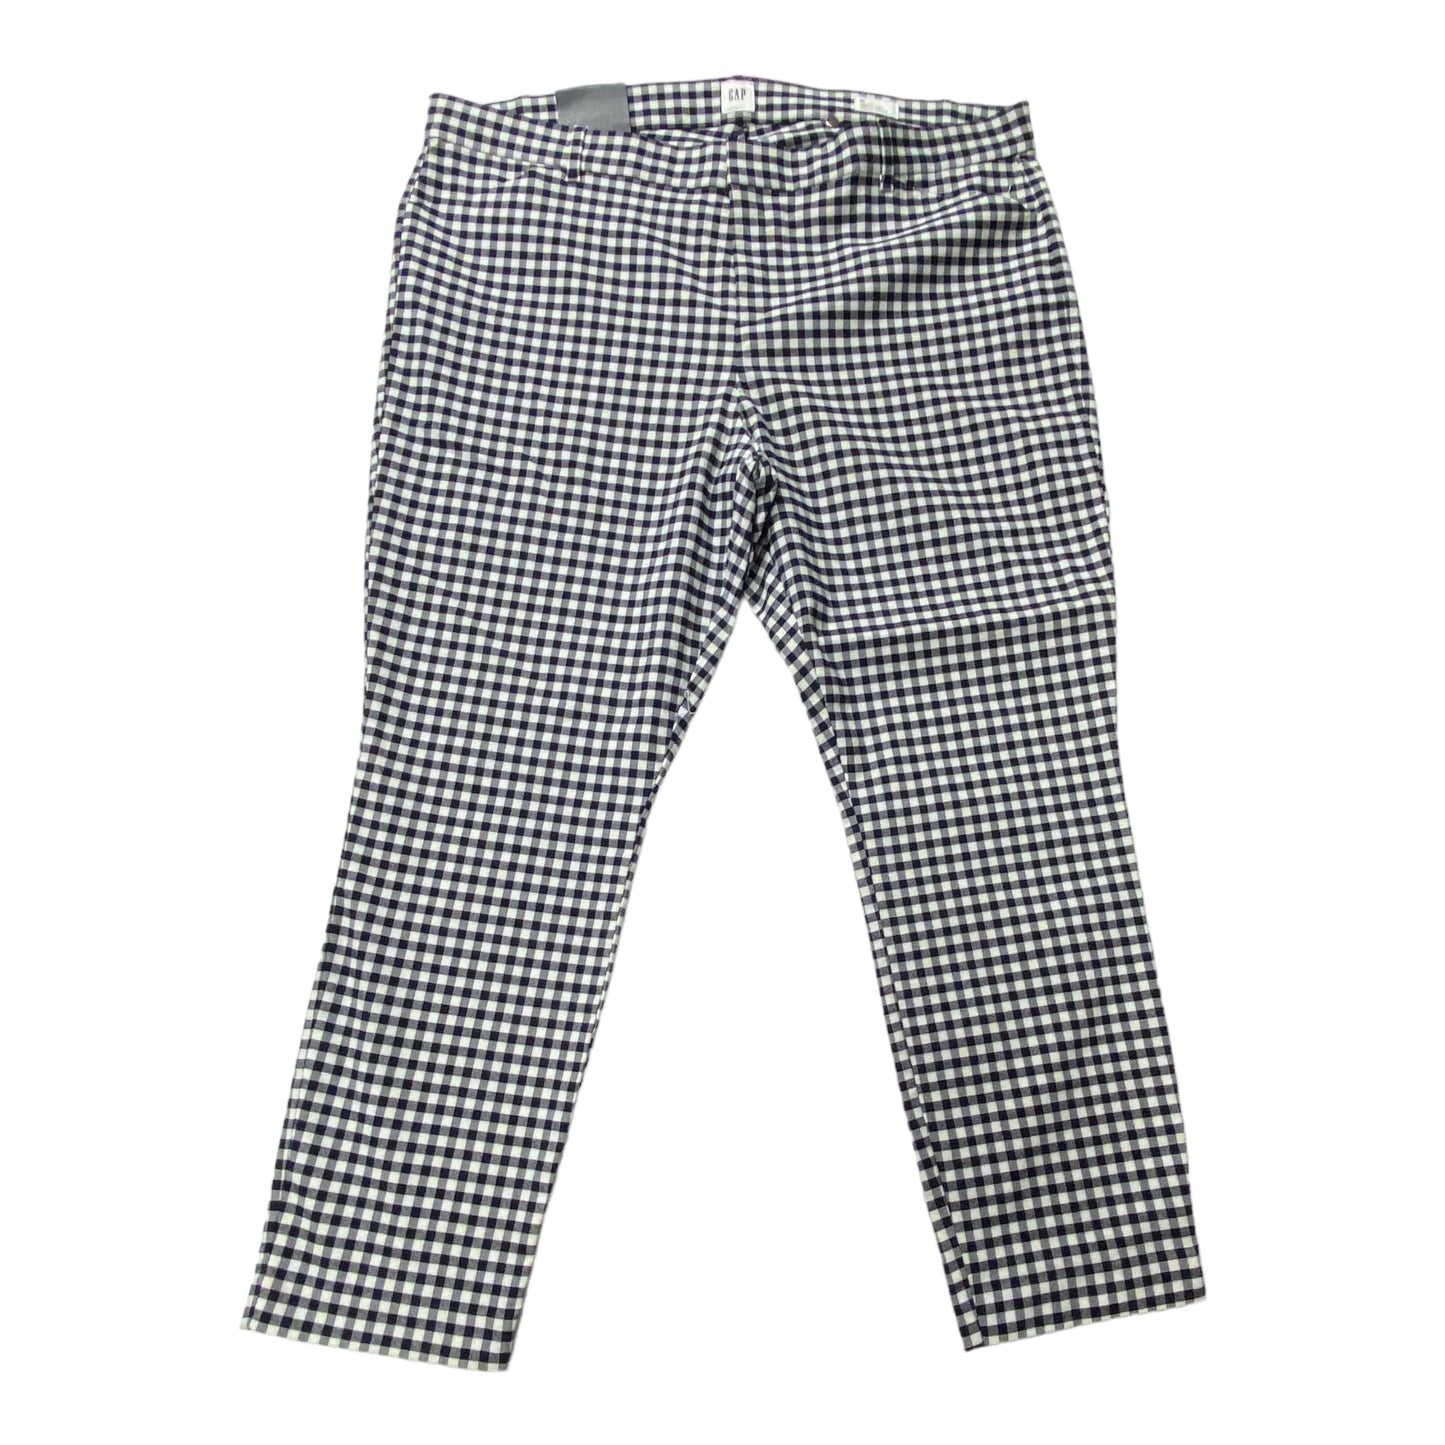 Blue & White Pants Cropped Gap, Size 20